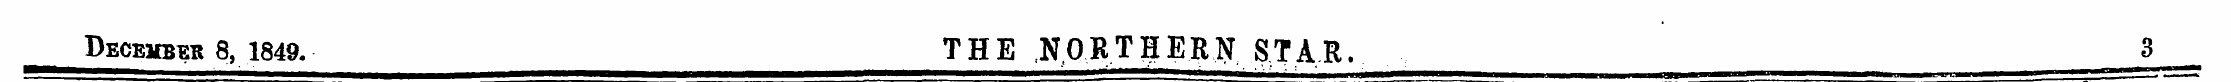 December 8, 1849. THE NORTff ERN STAR. 3